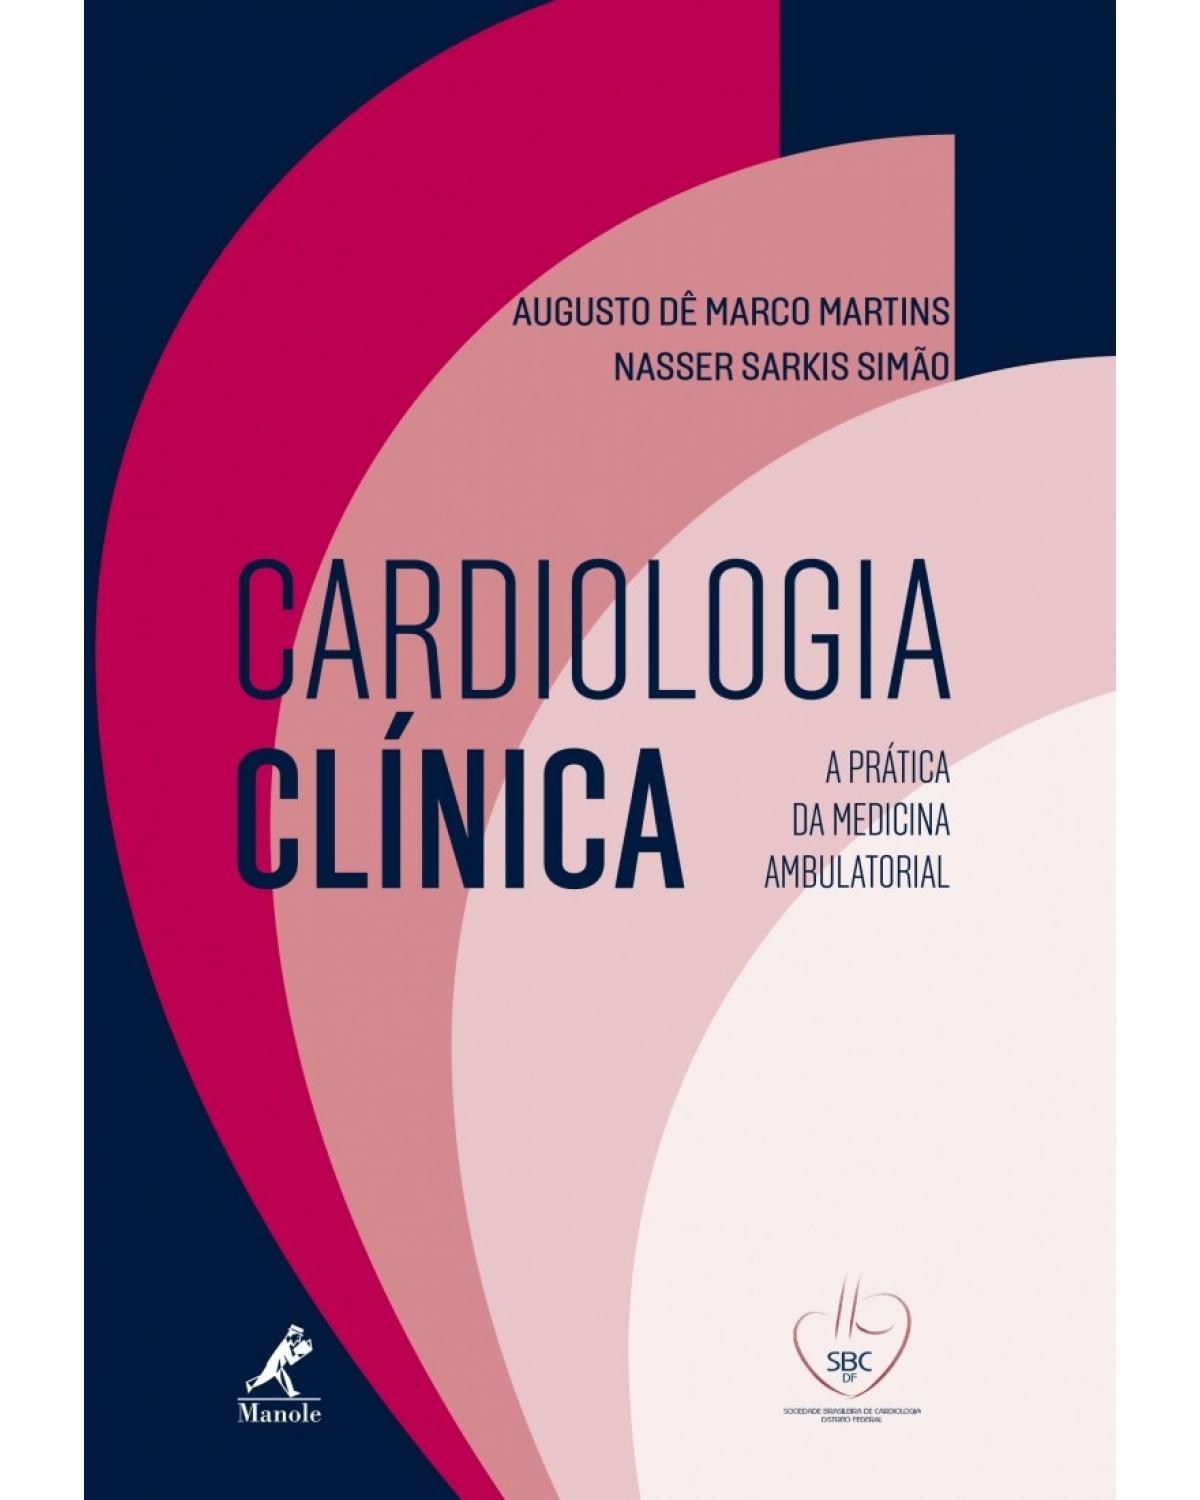 Cardiologia clínica - A prática da medicina ambulatorial - SBC DF - 1ª Edição | 2016